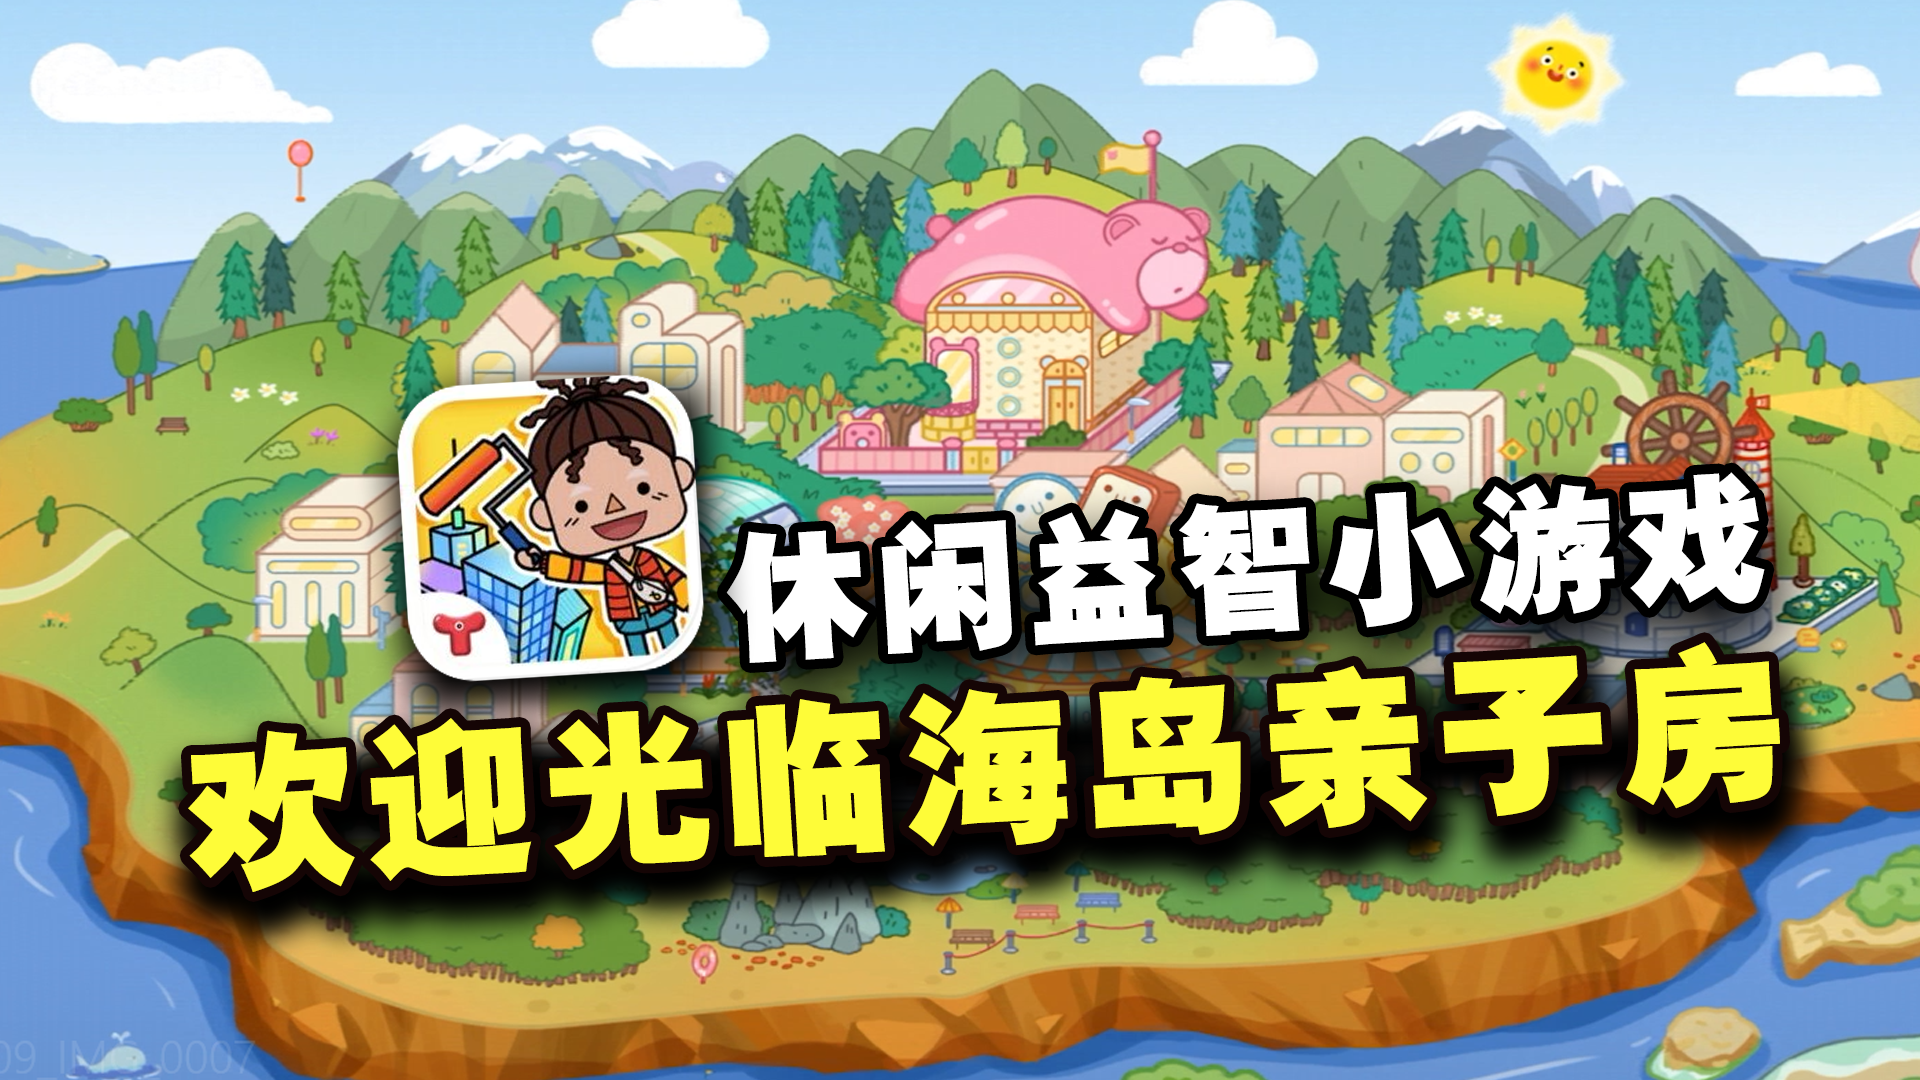 【休闲模拟】欢迎光临海岛亲子房~一款十分适合小朋友游玩的游戏